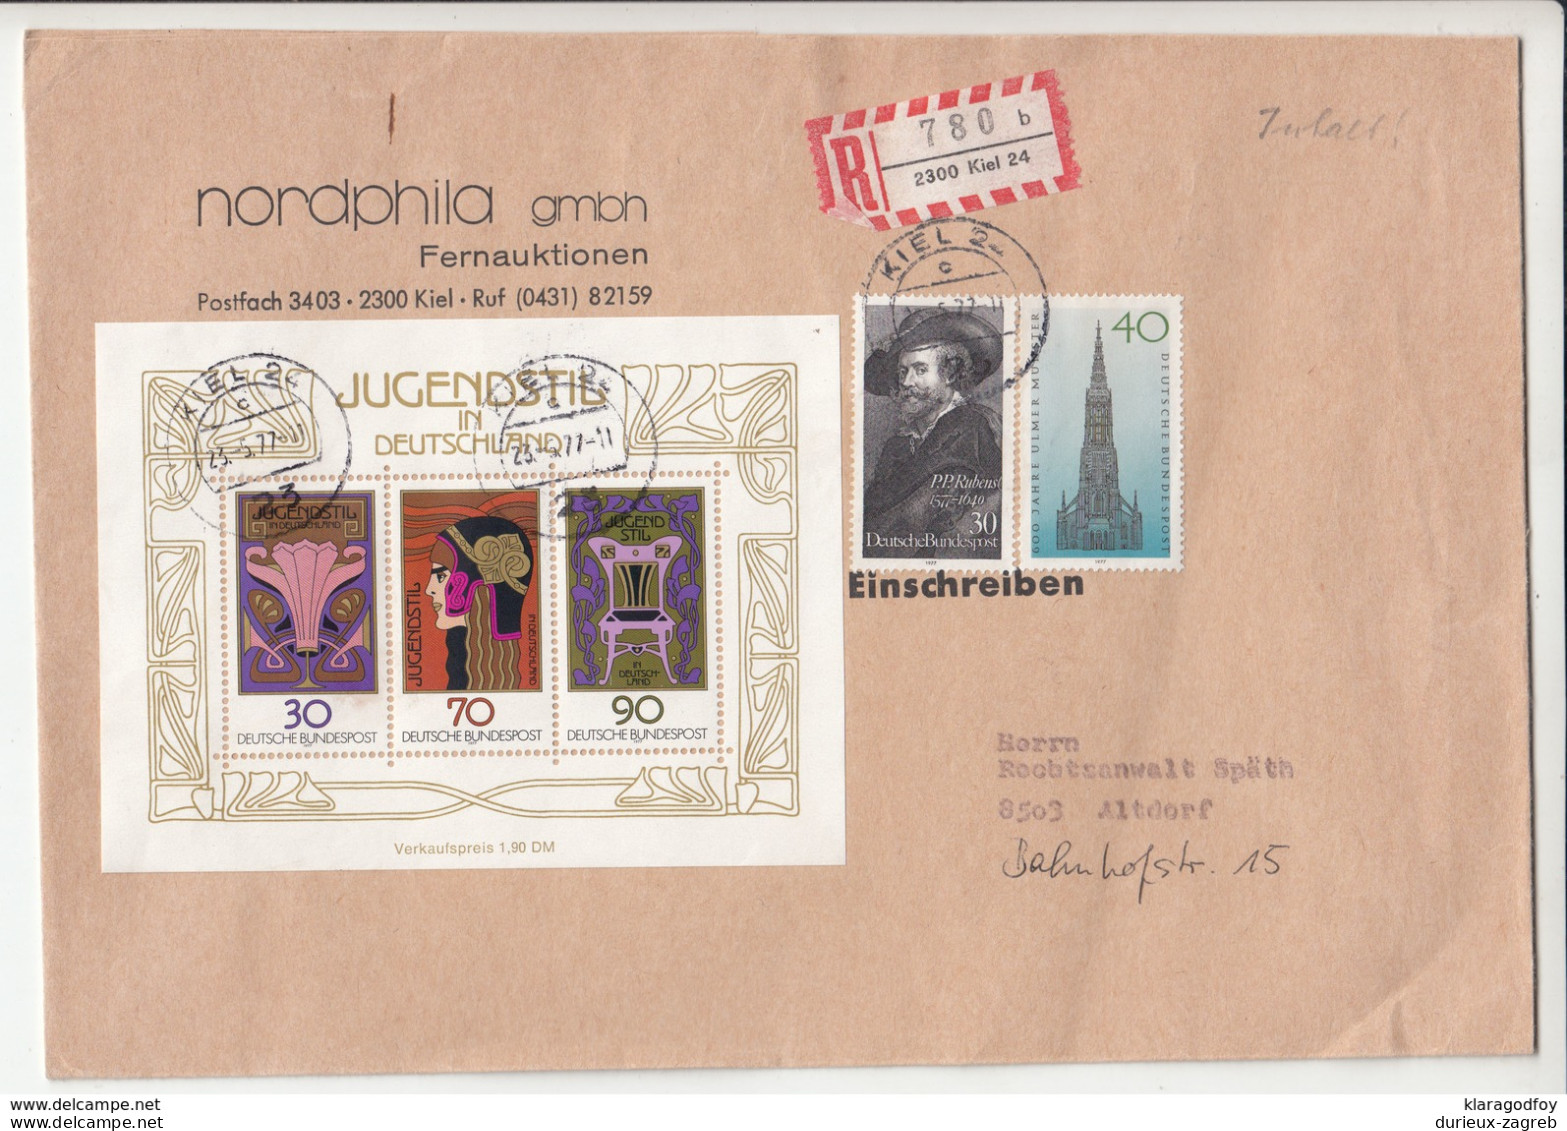 Germany, Jugendstil Souvernir Sheet On Nordhphila Letter Cover Registered Travelled 1977 Kiel Pmk B190101 - Storia Postale